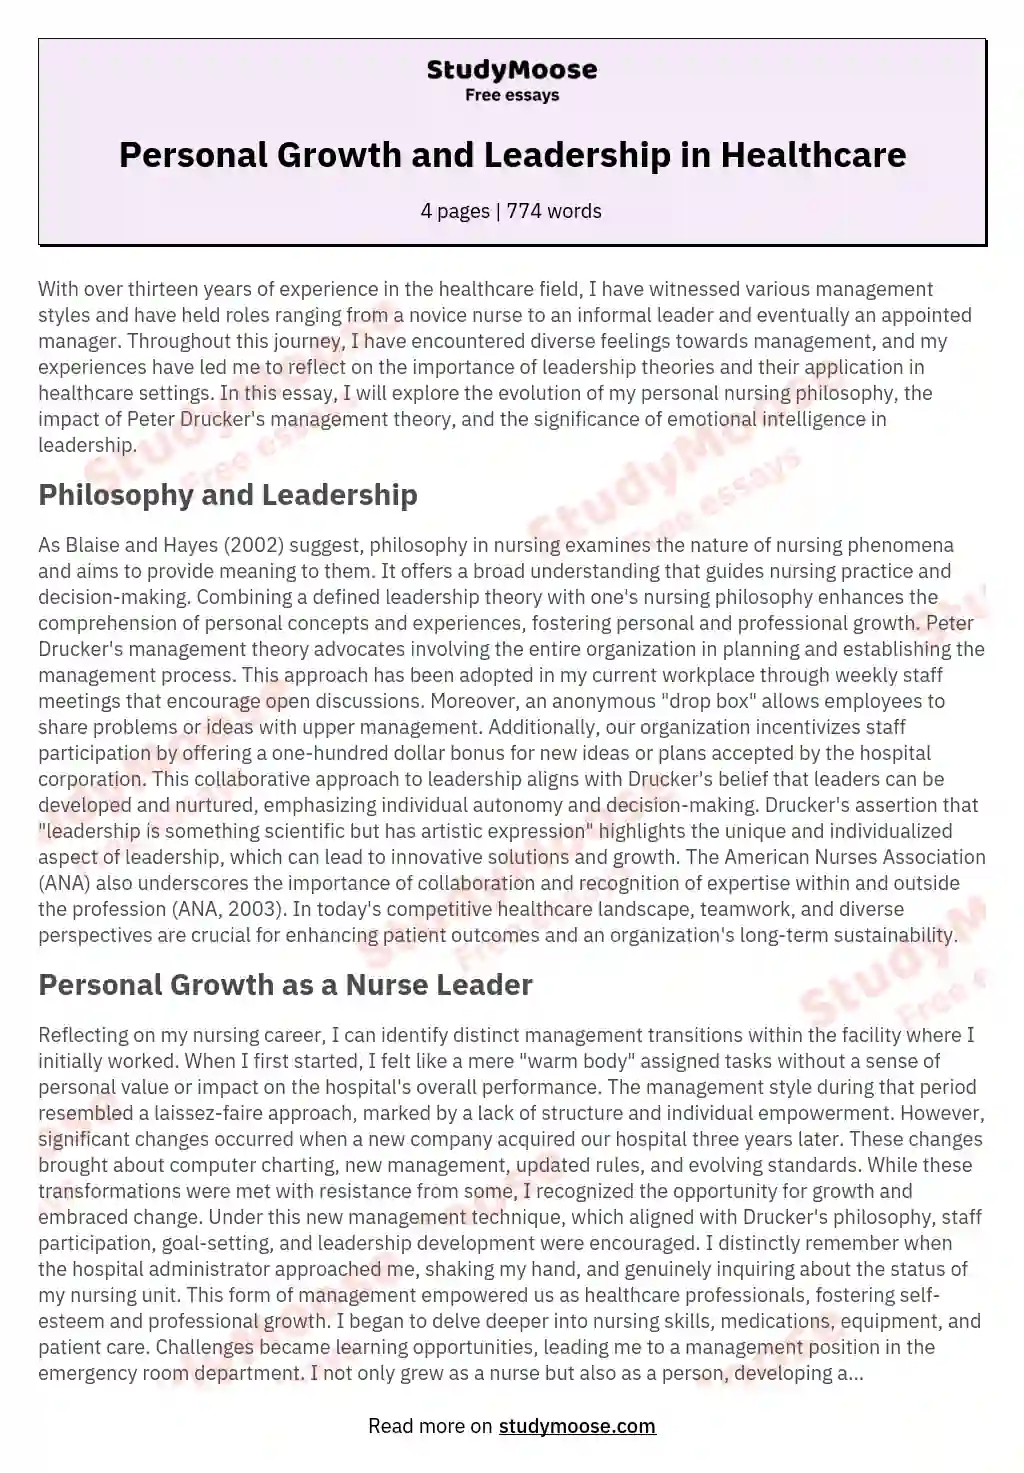 Philosophy of Nursing Leadership